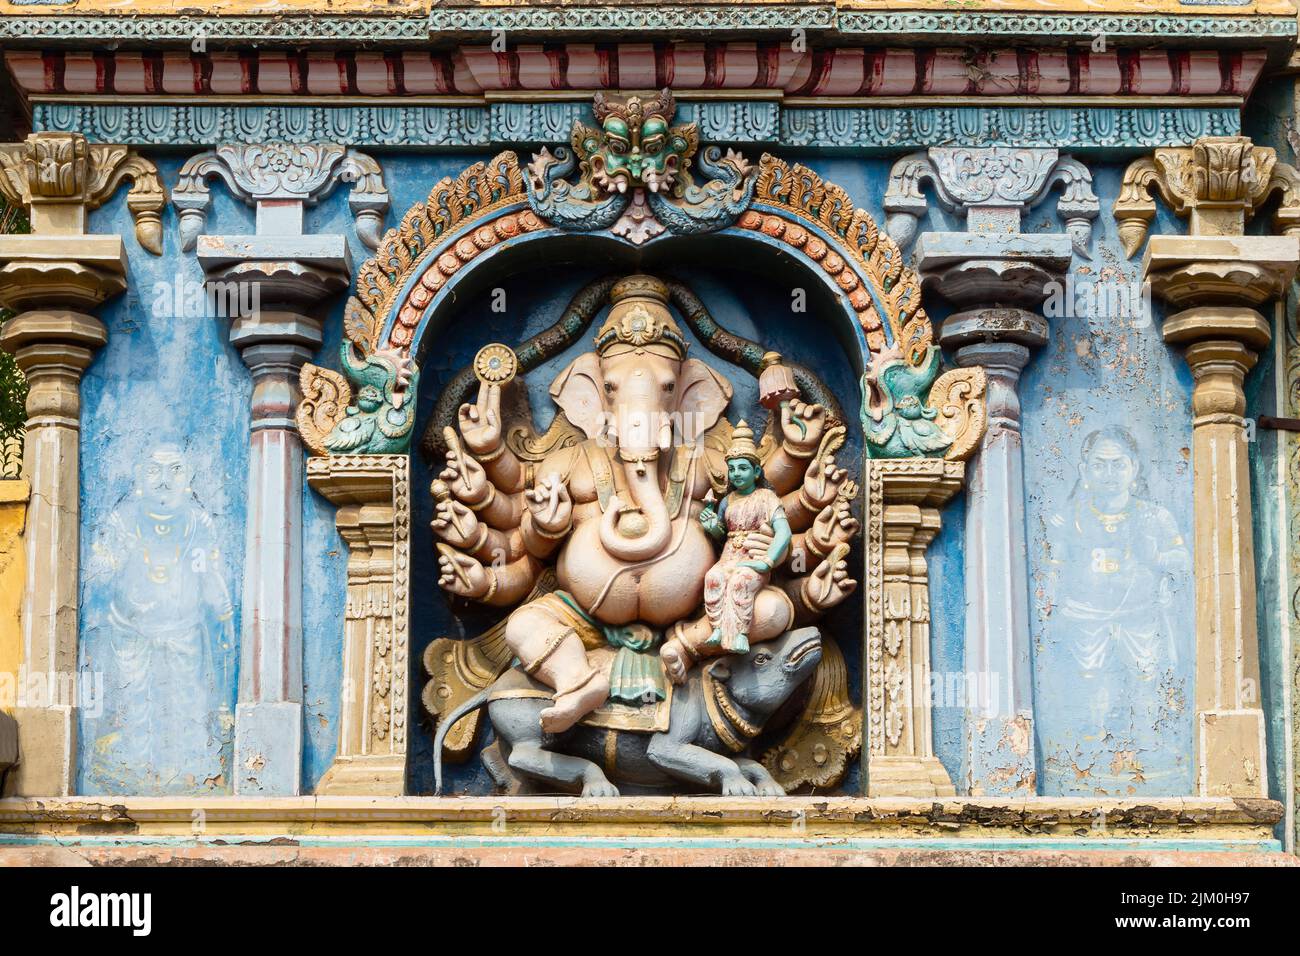 Escultura del Señor Ganesha en el Meenakshi Amman Temple Gopuram, Madurai, Tamilnadu, India. Foto de stock